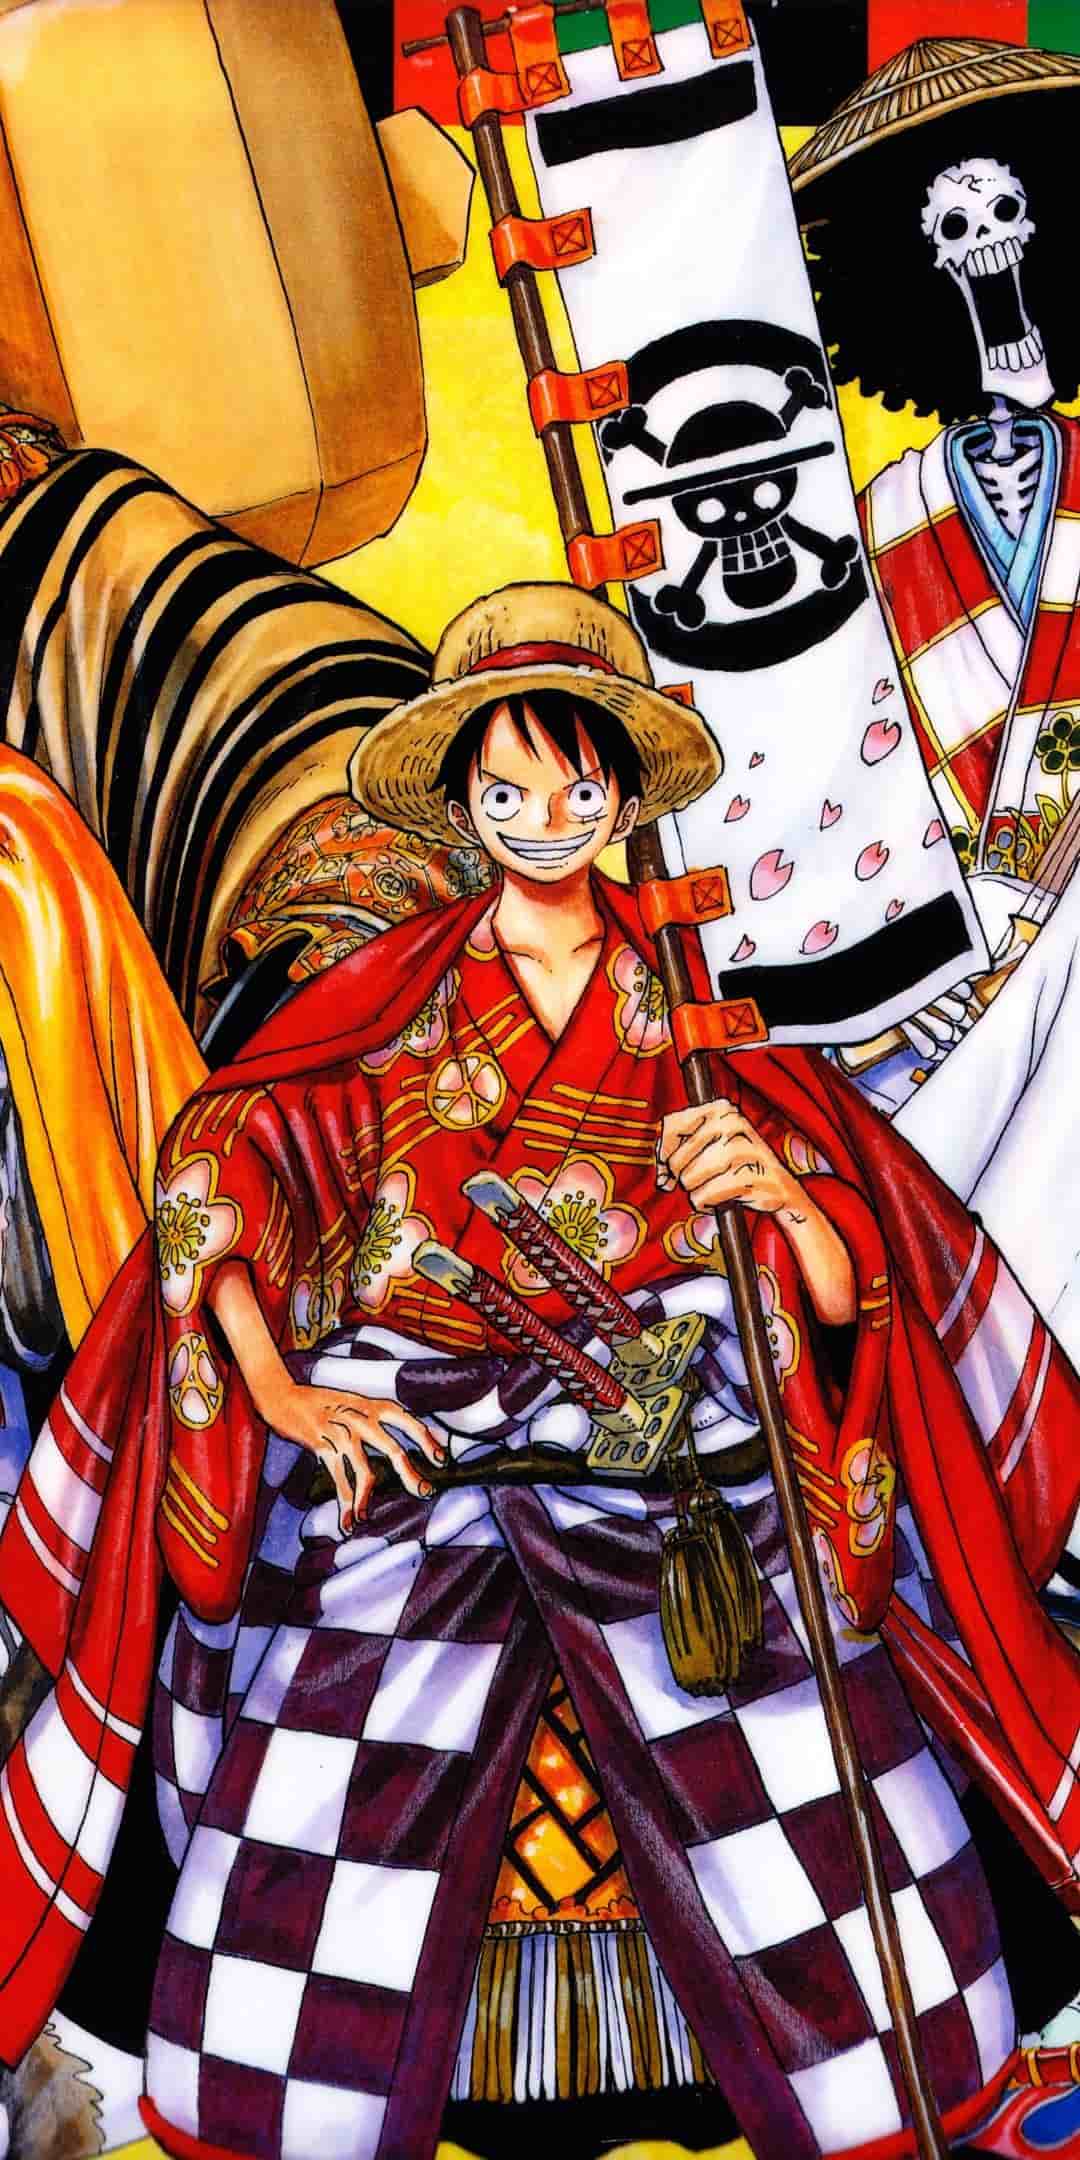 Để hiểu rõ hơn về nhân vật Luffy trong One Piece, hãy đến với bộ sưu tập hình ảnh về cậu ta. Luffy là một nhân vật hấp dẫn, đầy nhiệt huyết và tình yêu thương. Những hình ảnh về Luffy sẽ giúp bạn có cái nhìn độc đáo và thấu hiểu được nét đặc trưng của nhân vật này trong bộ truyện tranh nổi tiếng.